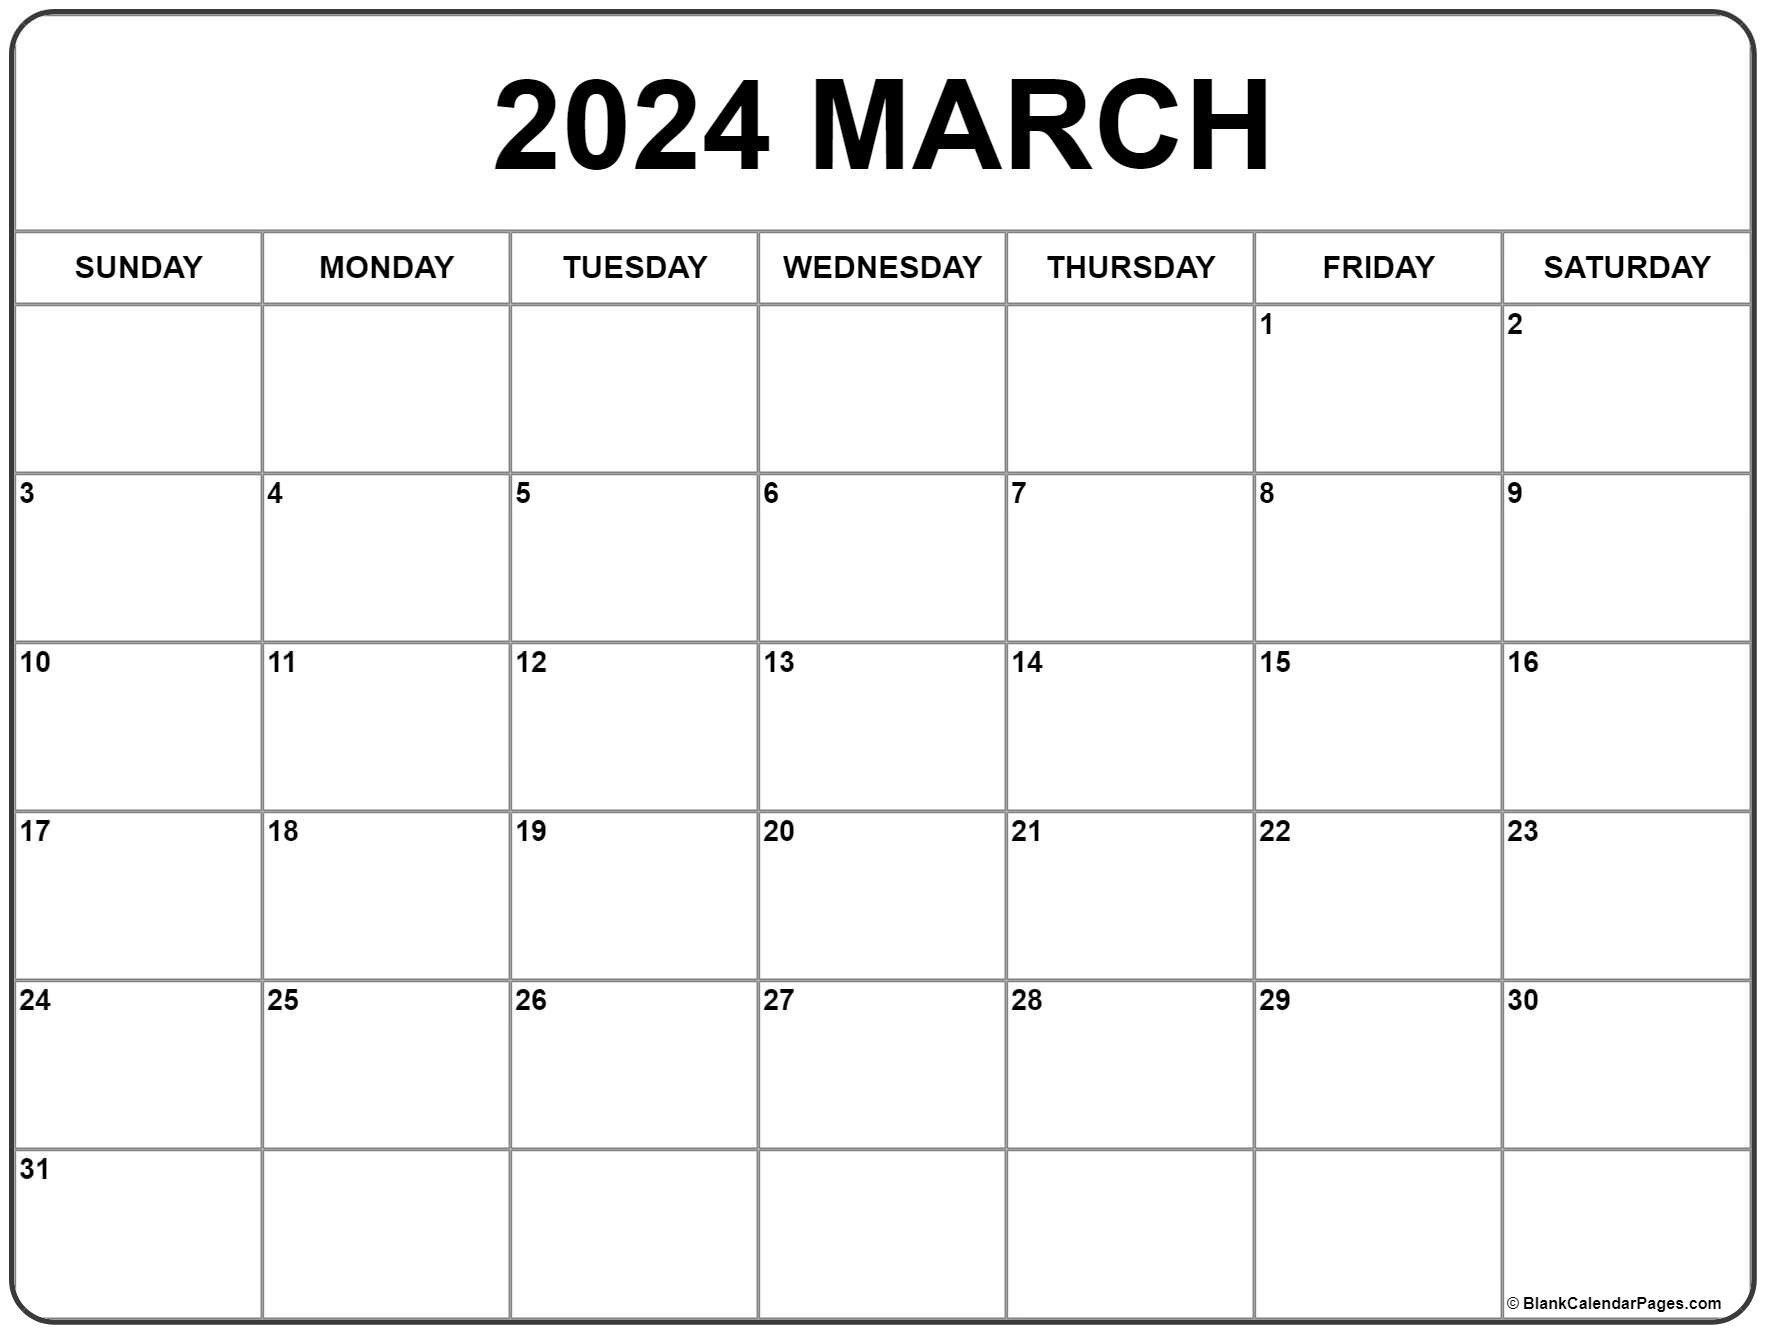 March 2024 Calendar | Free Printable Calendar | March 2024 Calendar Printable